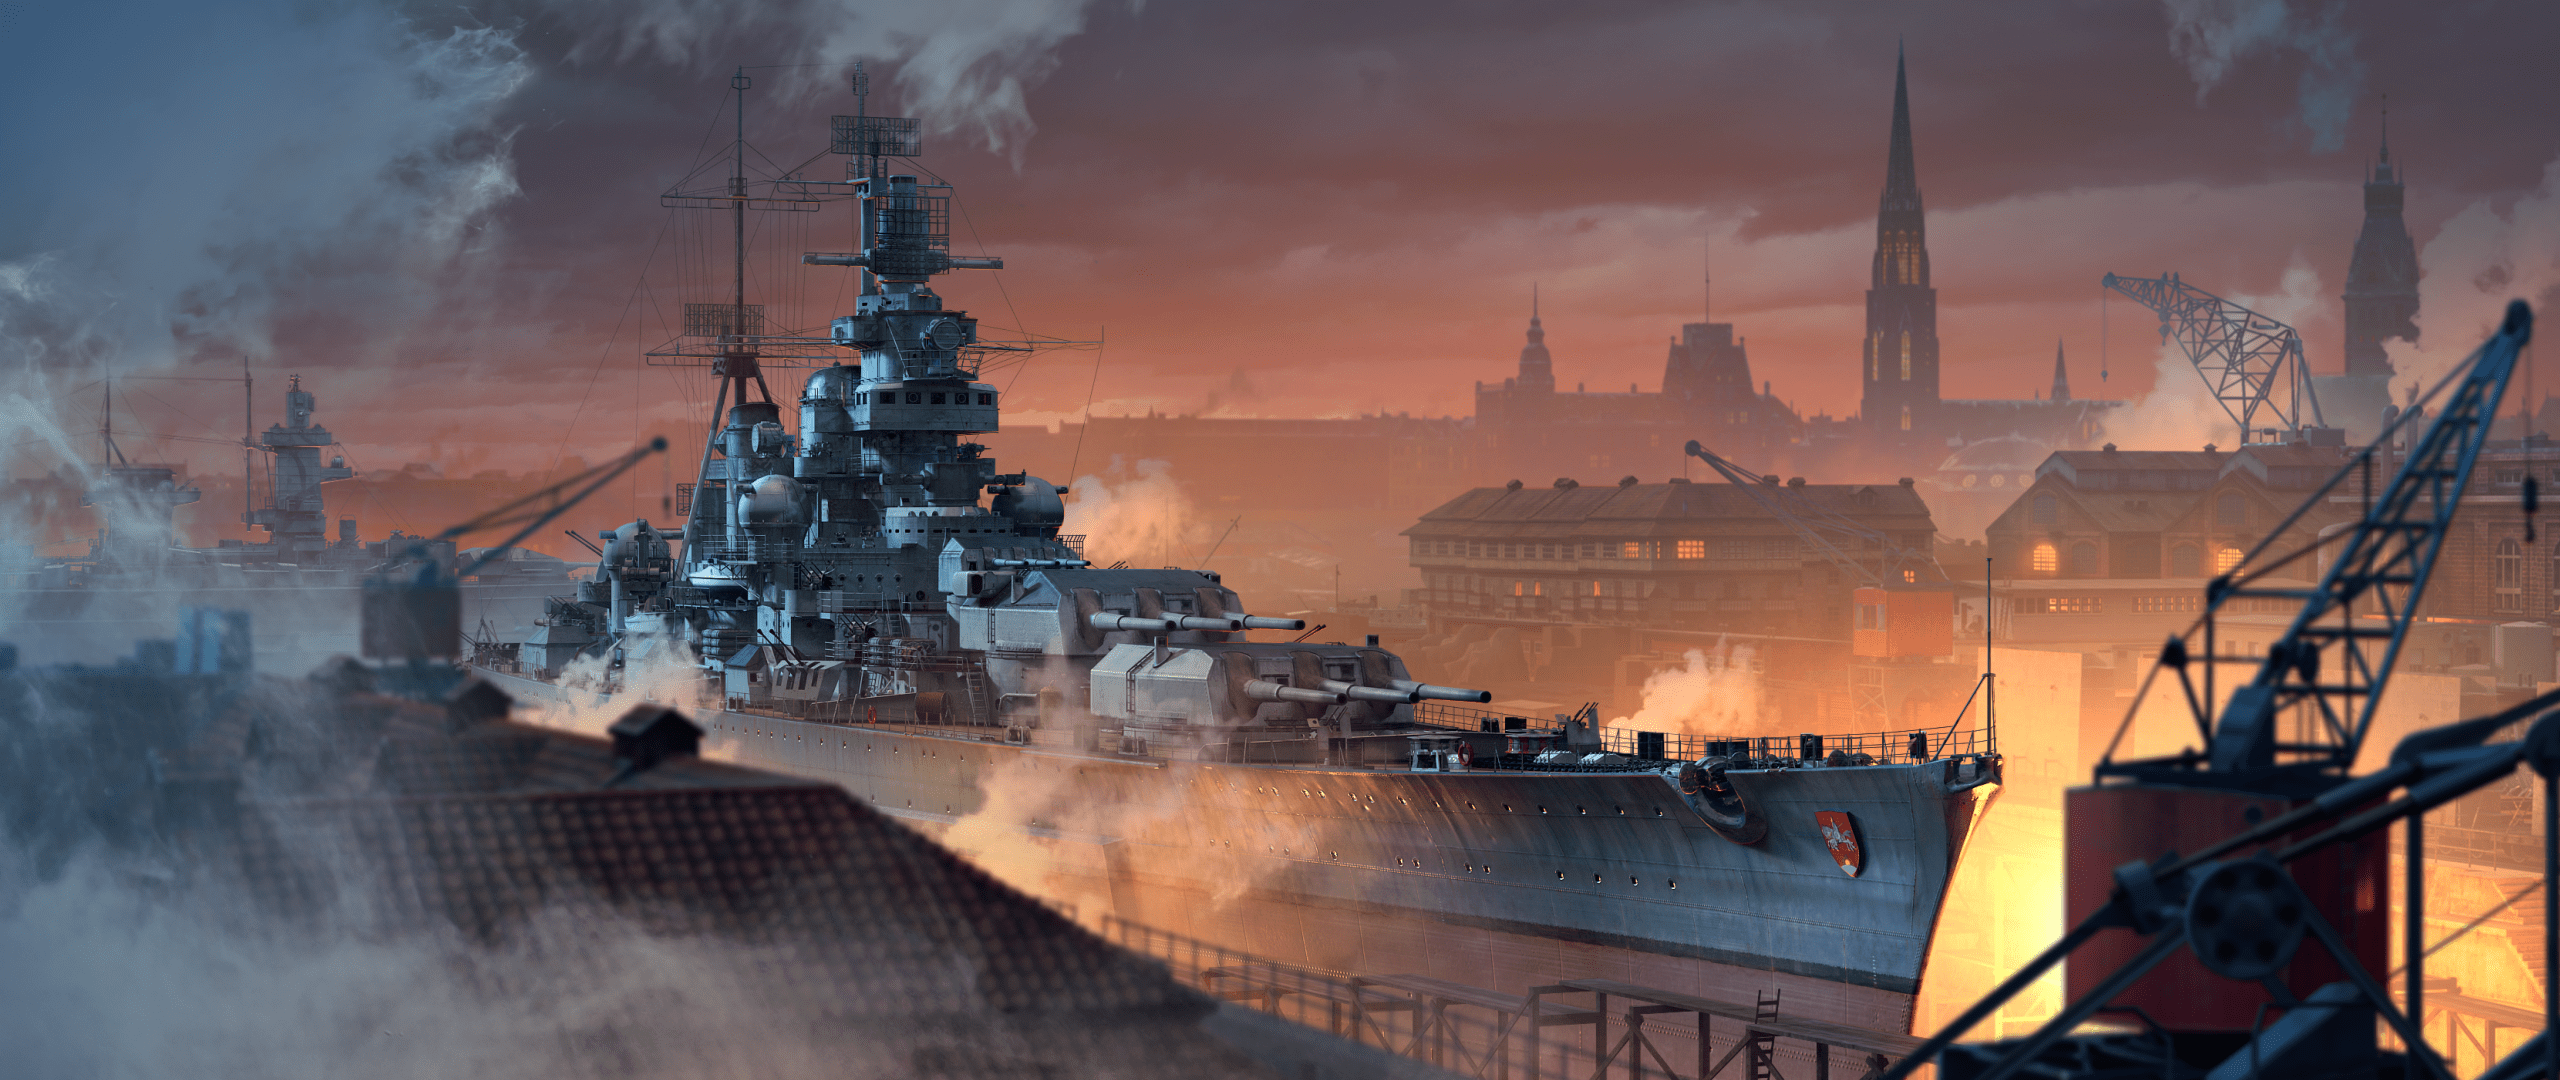 Odin Ship World Of Warships Wargaming Ship Battleships Artwork PC Gaming Video Games Sunset Architec 2560x1080